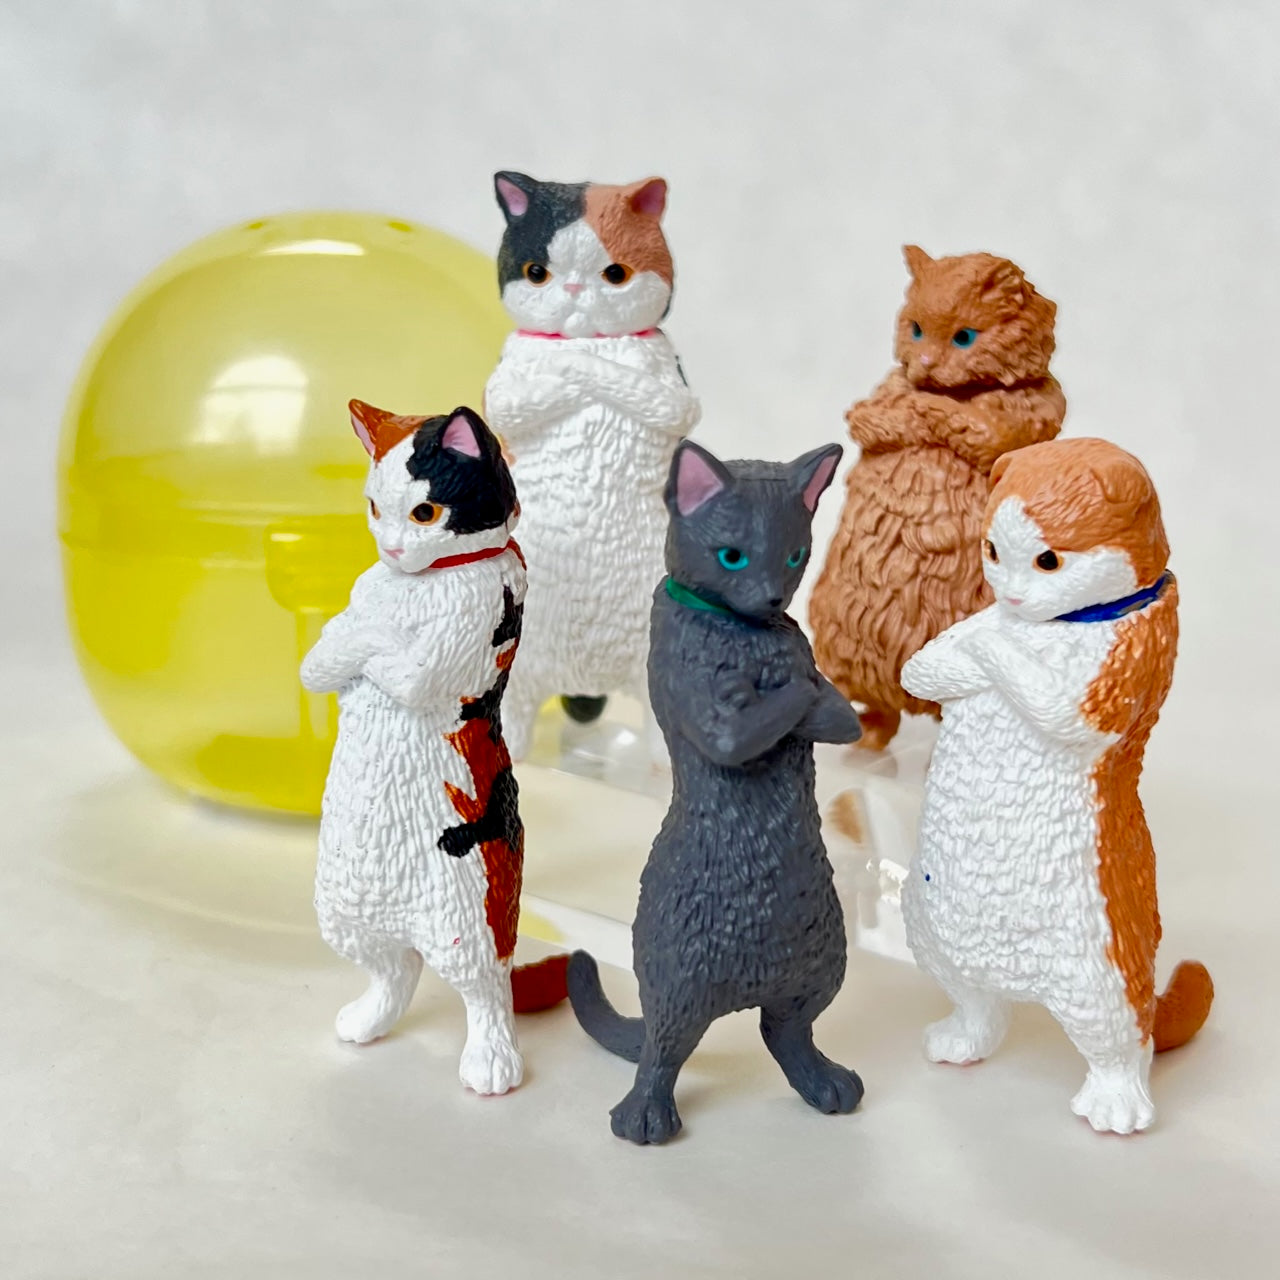 70252 Zun! Cats Figurine Capsule-5